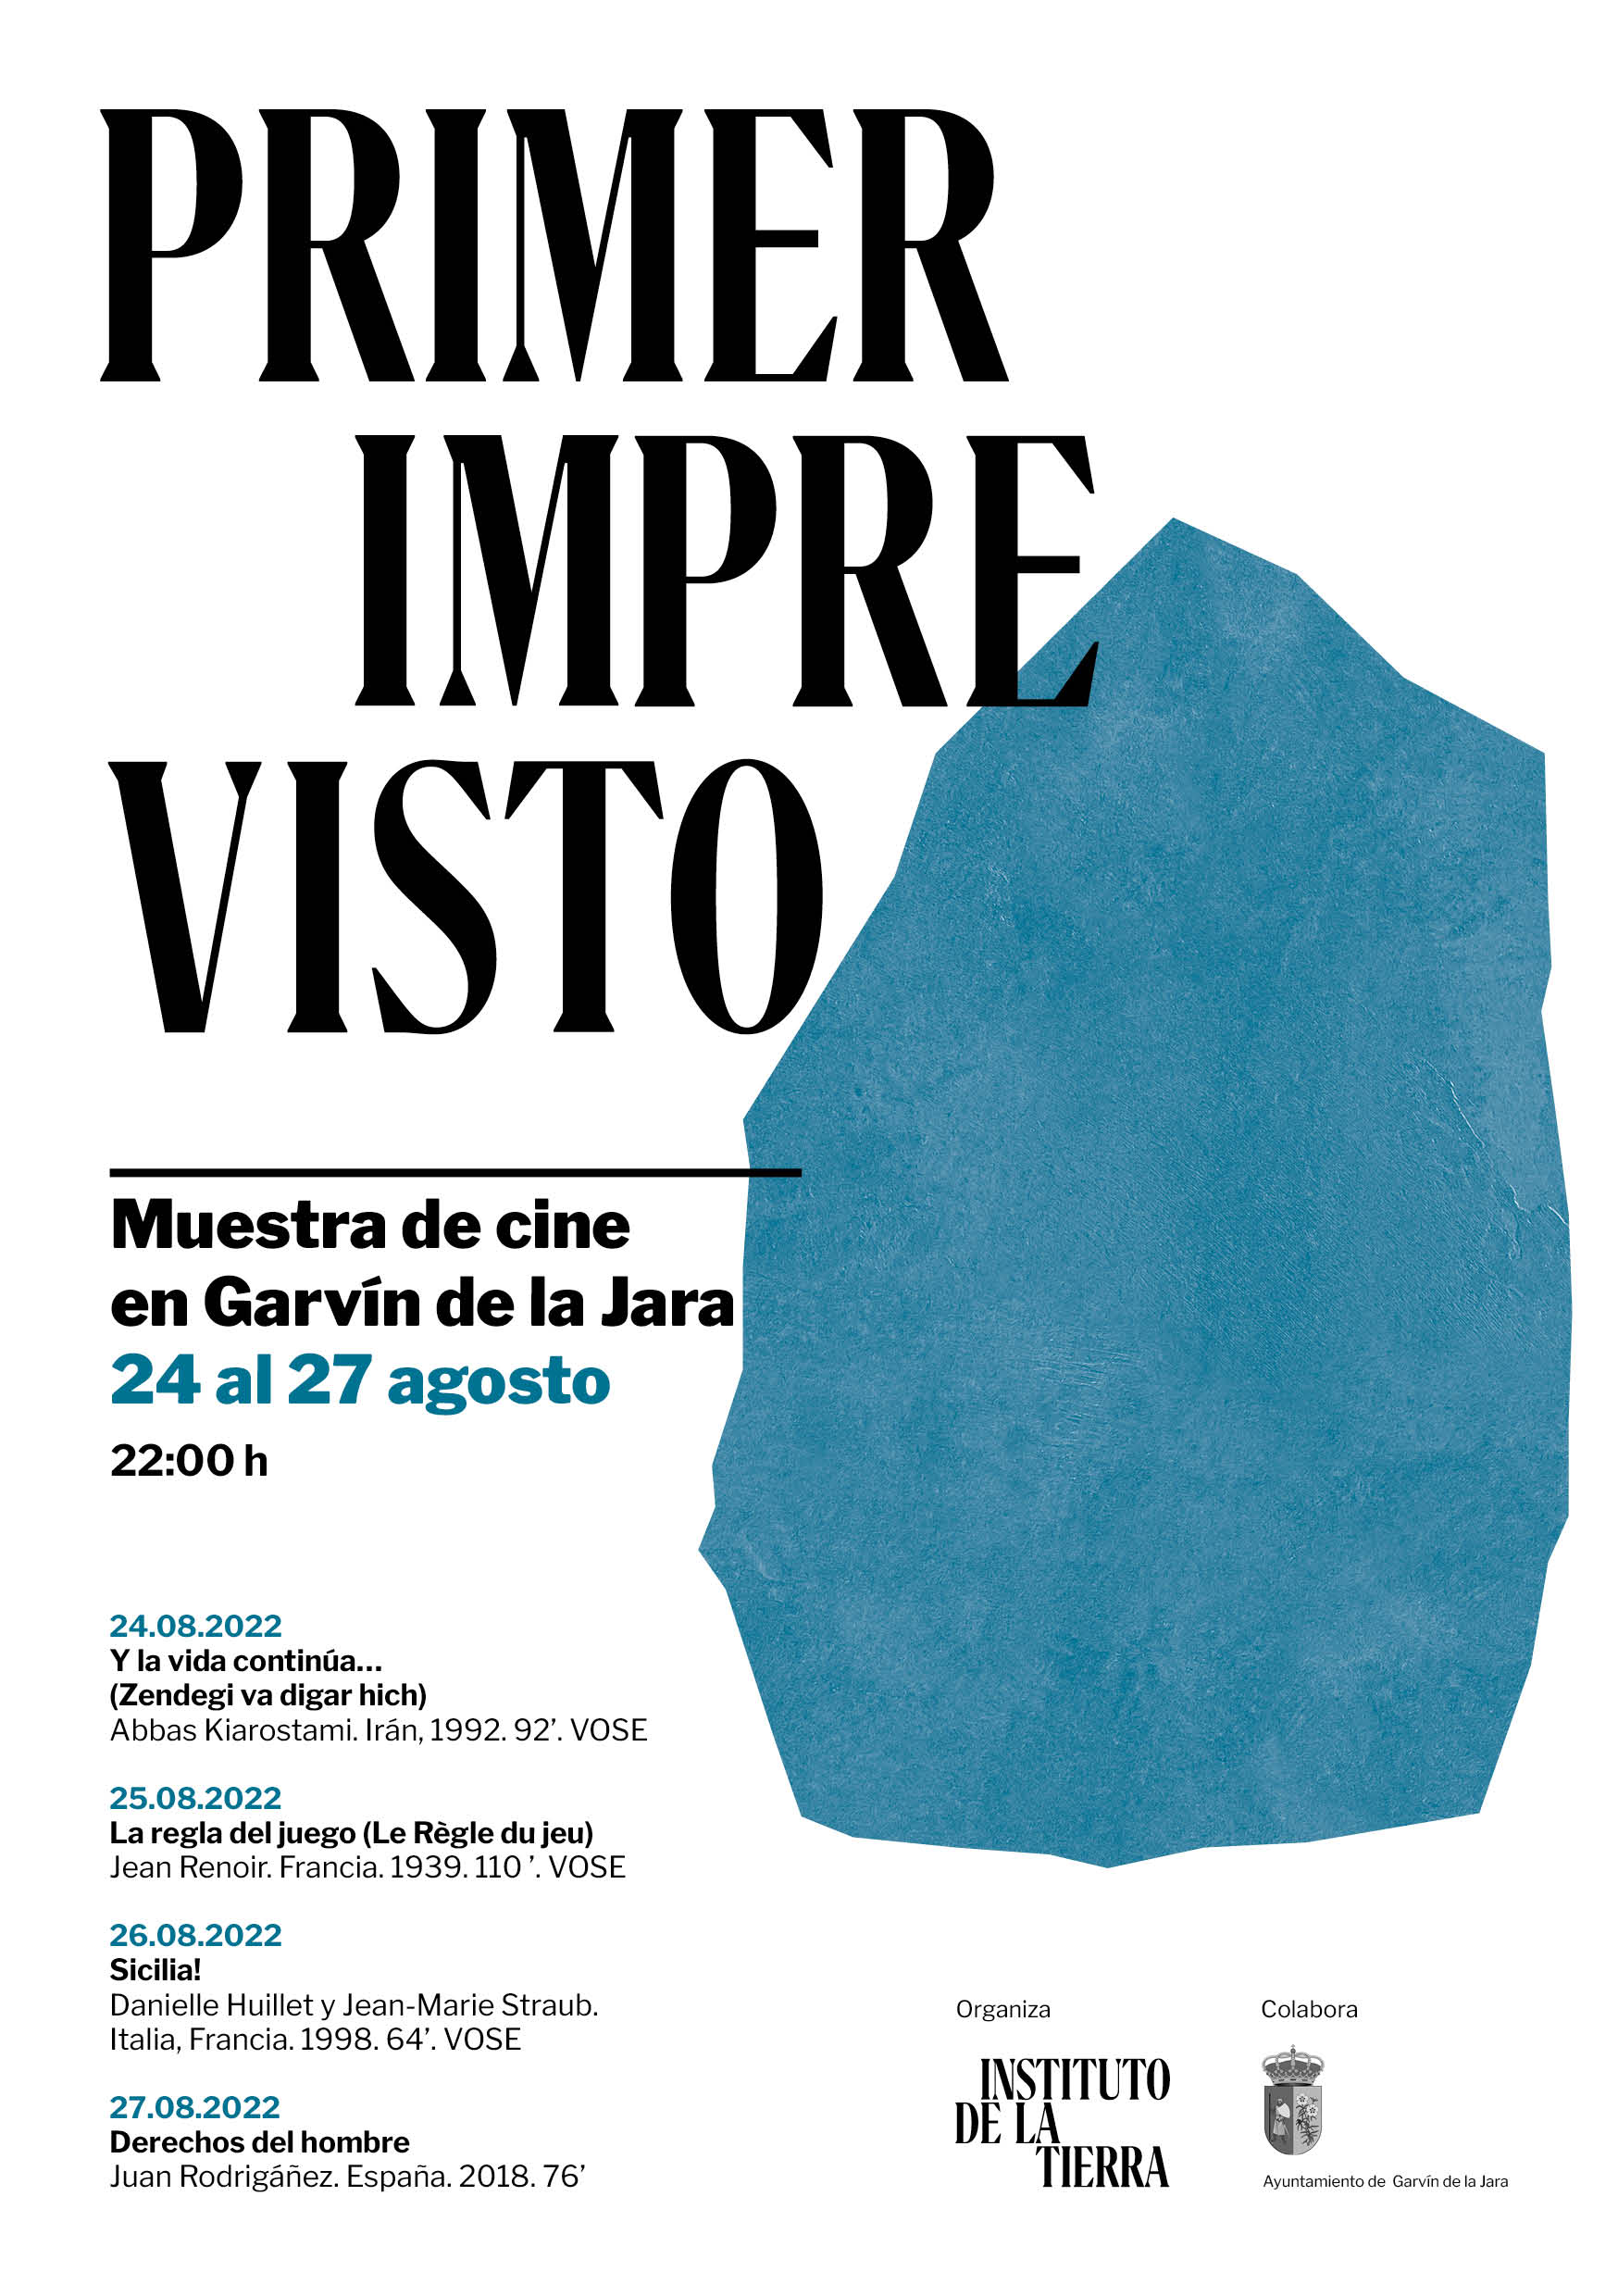 Muestra de cine en Garvín de la Jara